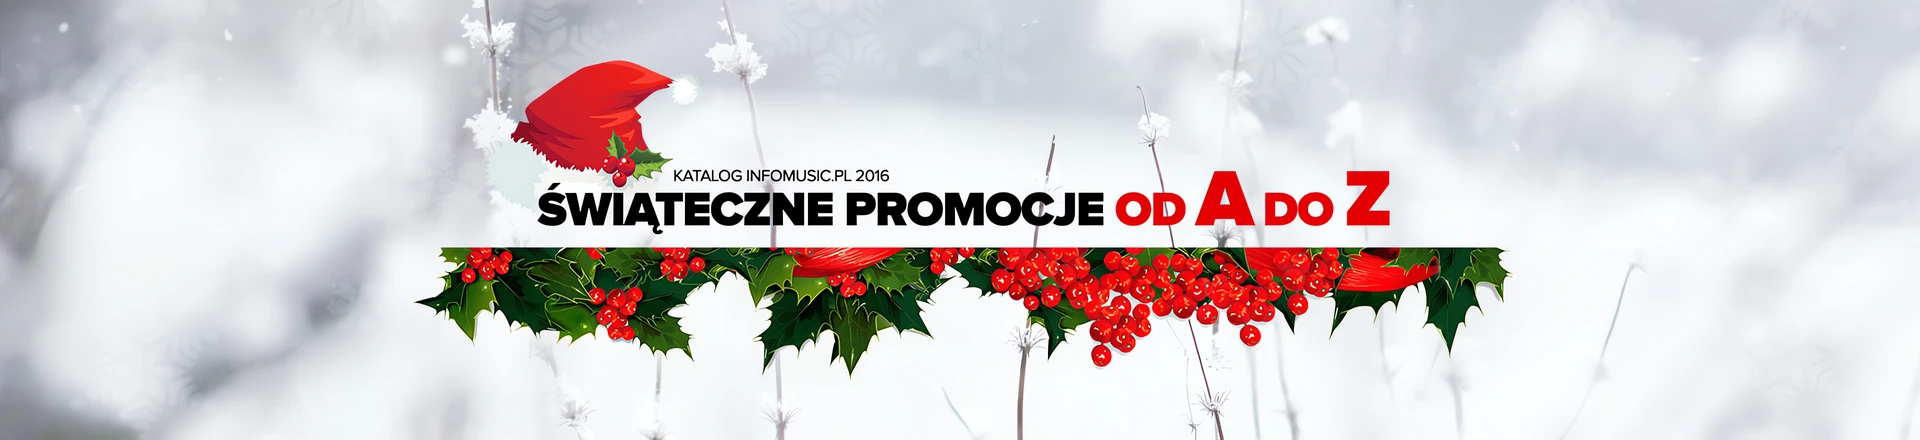 Świąteczny katalog Infomusic.pl - Zobacz super promocje!